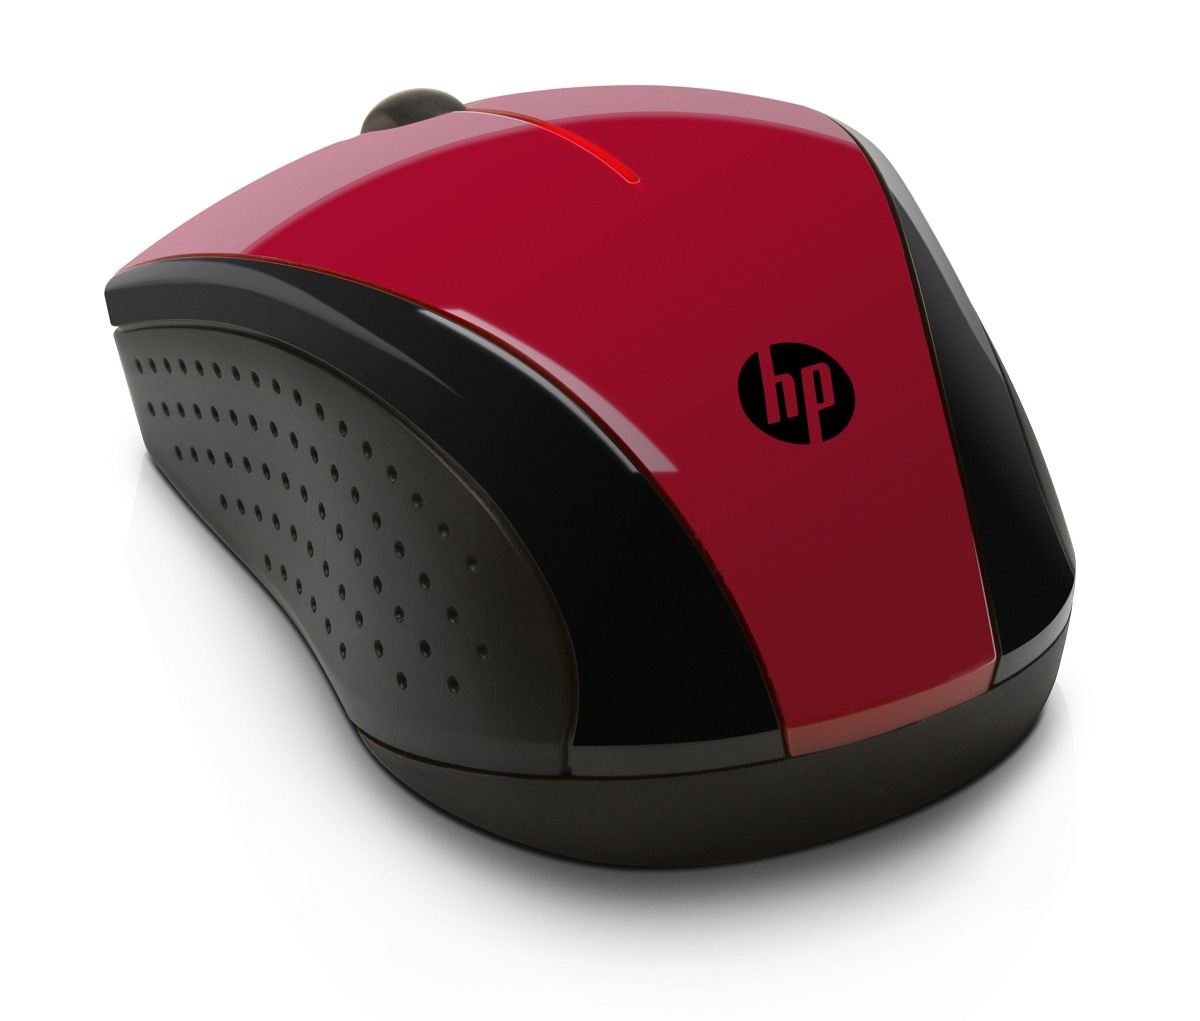 Bezdrôtová myš HP X3000 - sunset red (N4G65AA)